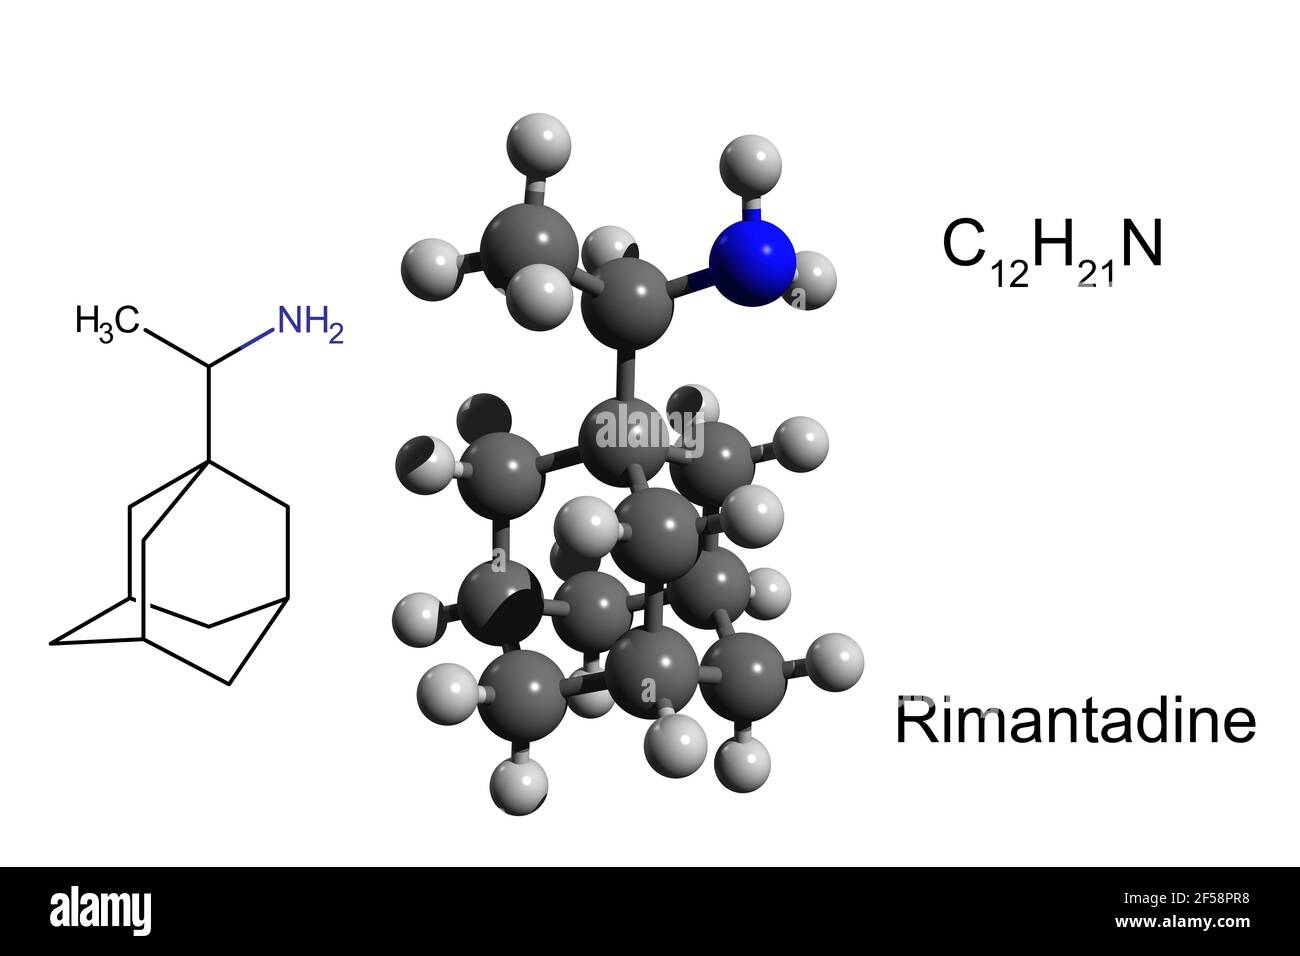 Chemische Formel, Strukturformel und 3D Ball-and-Stick-Modell von Rimantadin, einem oral verabreichten antiviralen Medikament zur Behandlung von Influenza-Virus A Stockfoto